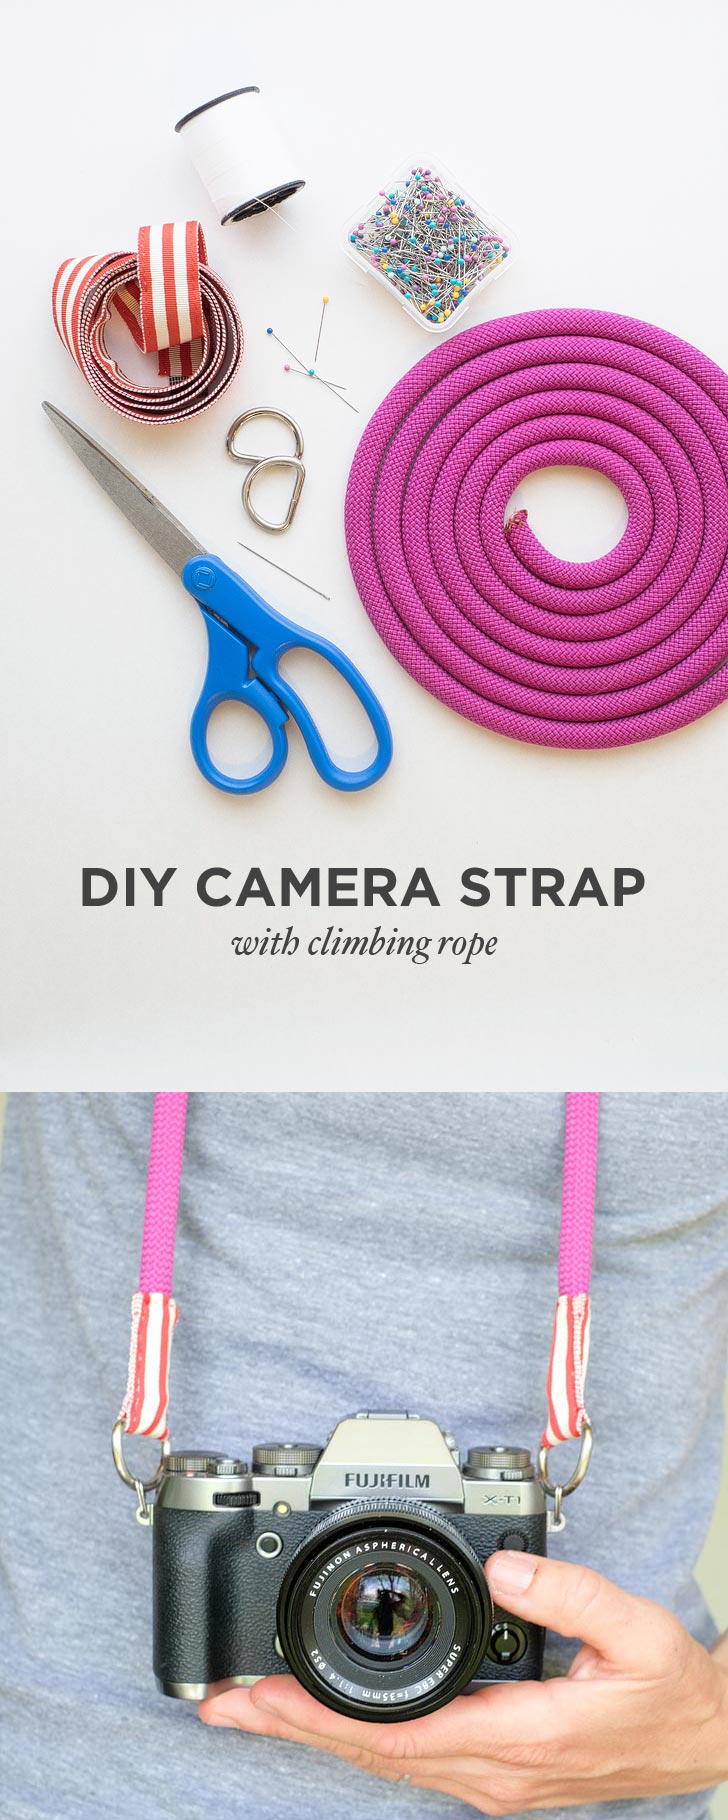 DIY Camera Strap with Climbing Rope // localadventurer.com